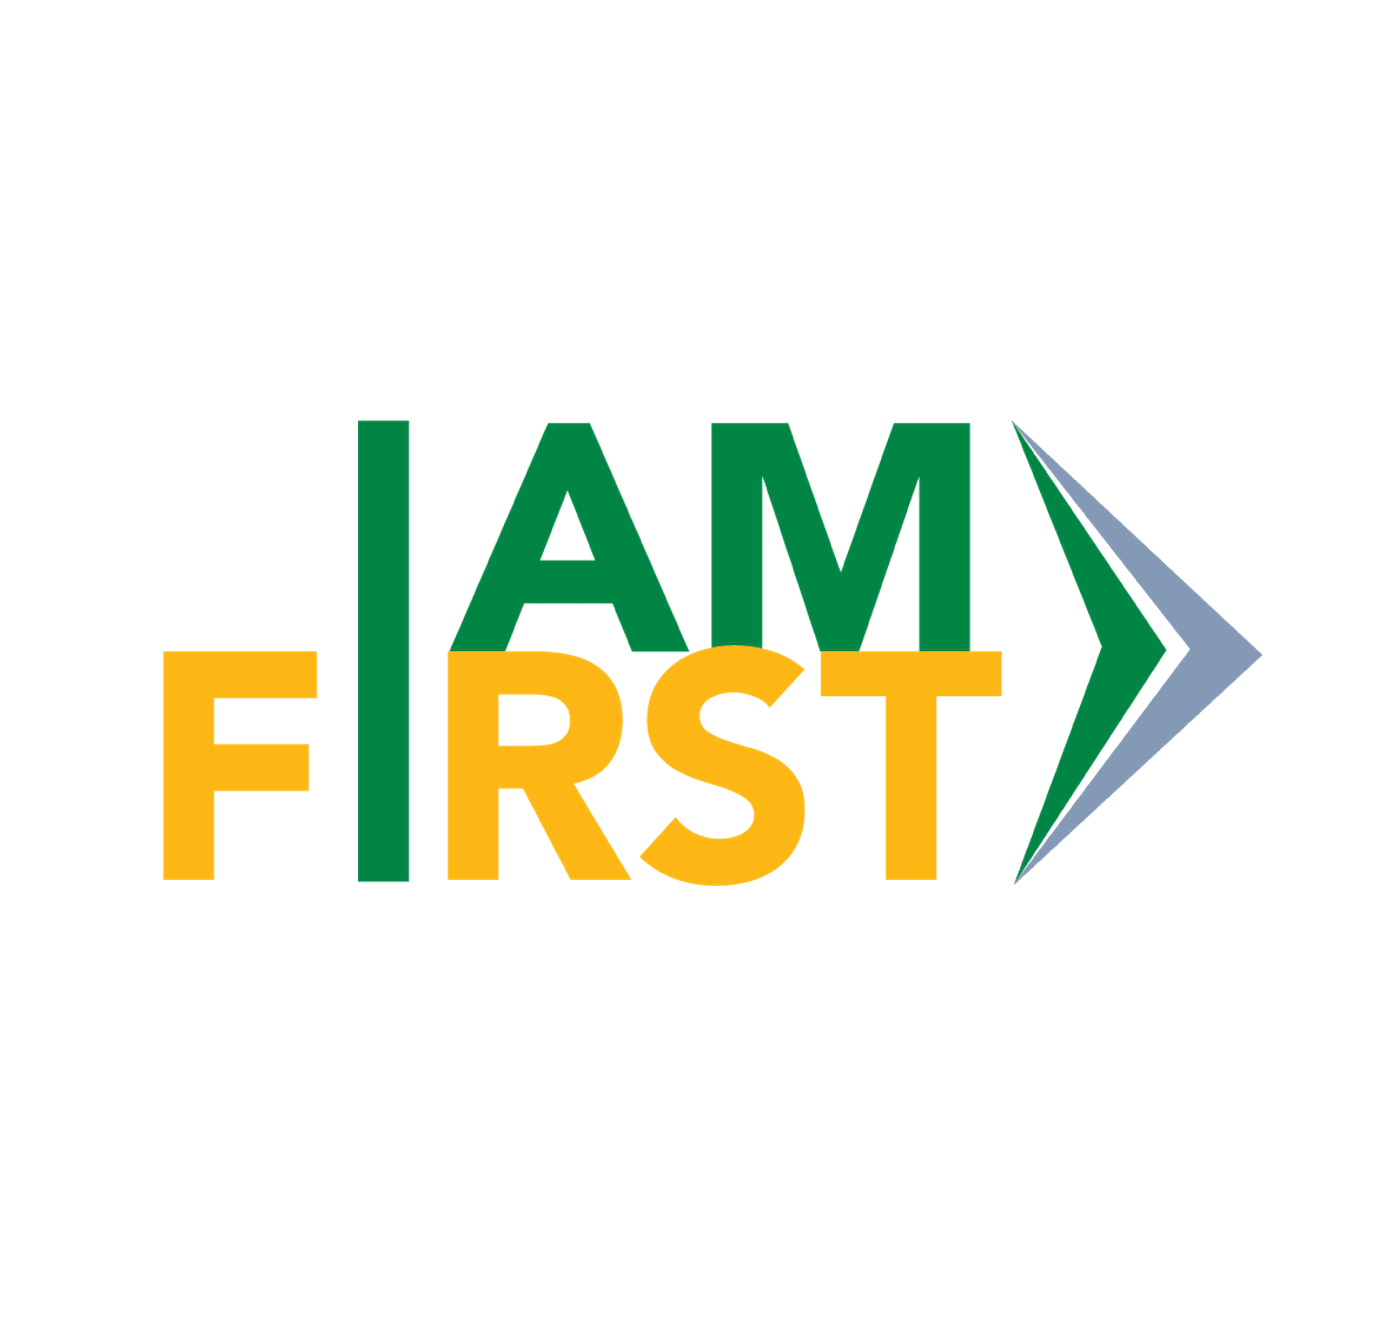 I AM First logo